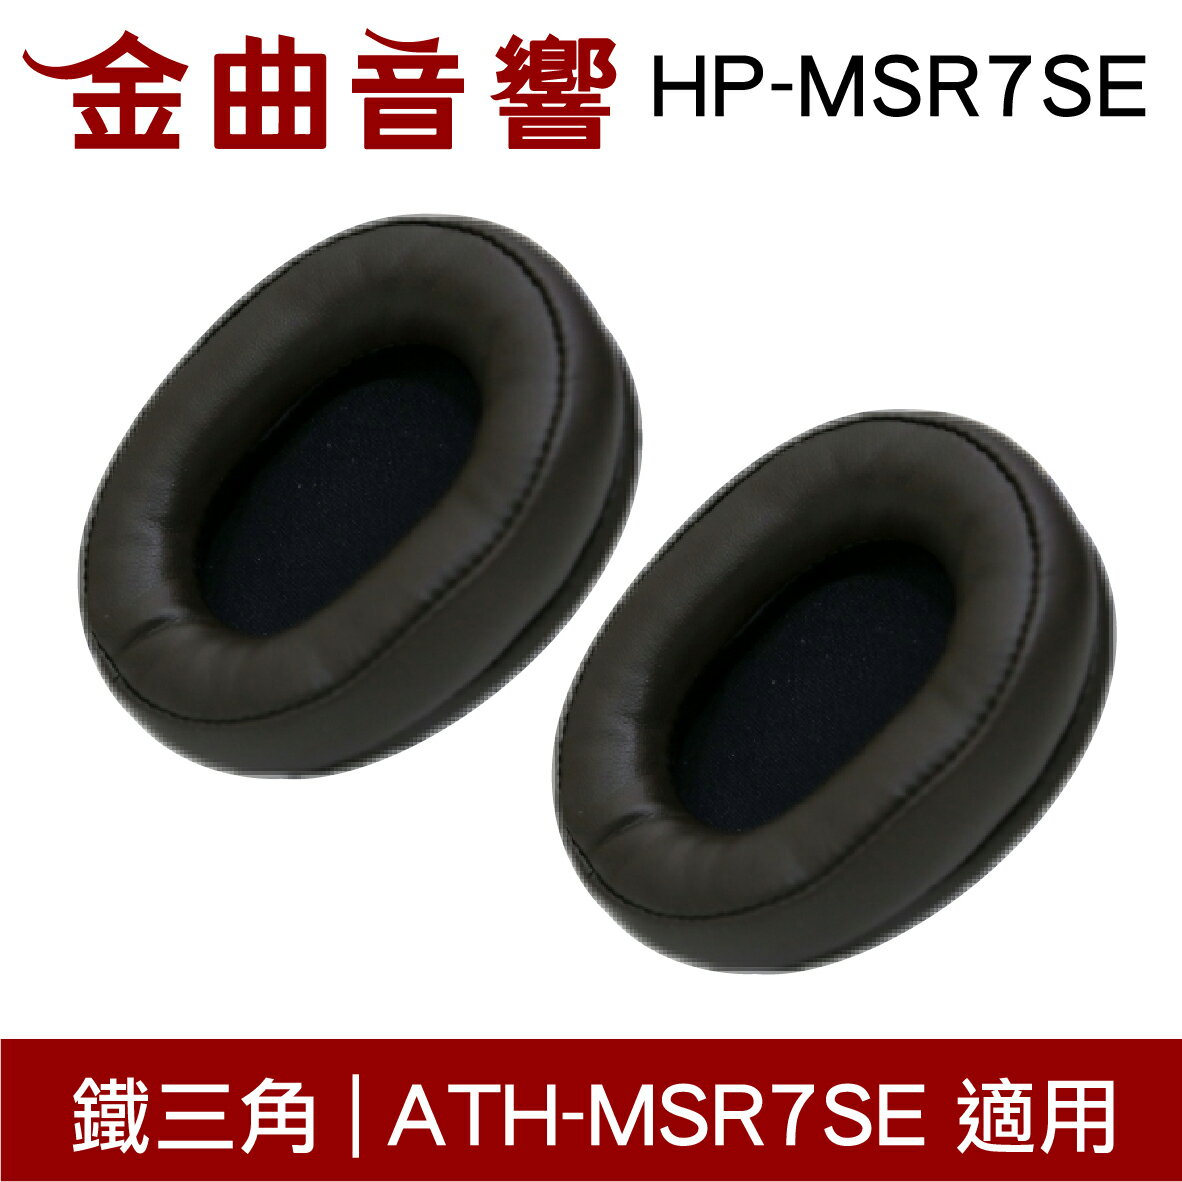 鐵三角 HP-MSR7SE 替換耳罩 一對 ATH-MSR7SE 適用 | 金曲音響